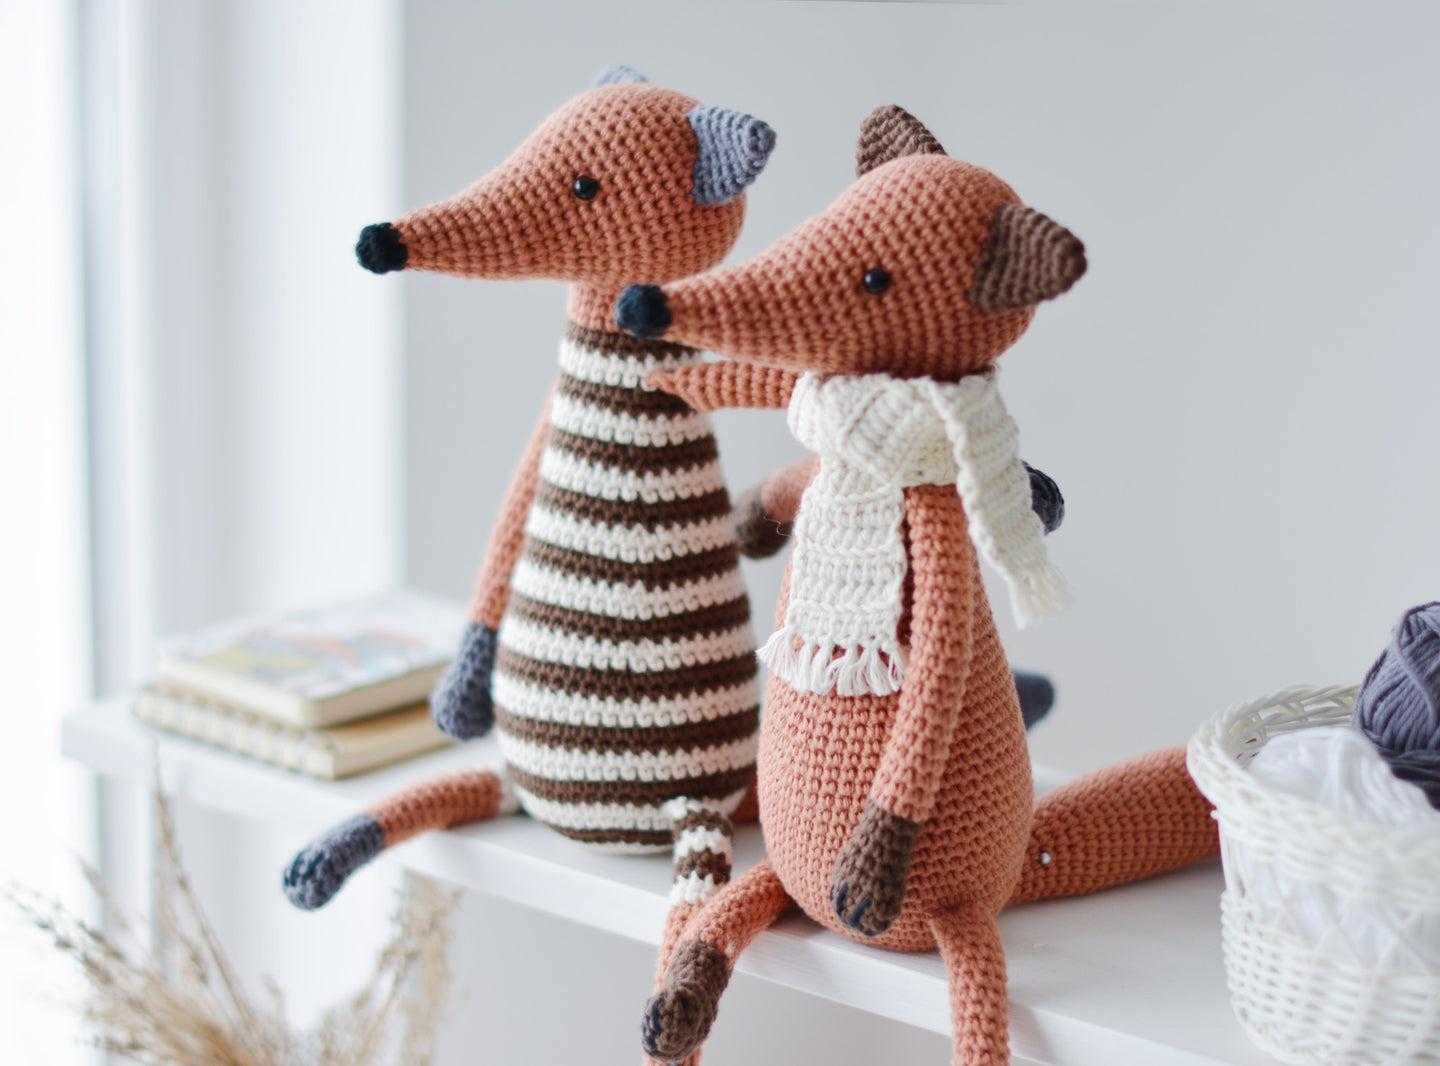 Crochet Pattern for Two Foxes, Amigurumi Fox Tutorial PDF - Firefly Crochet